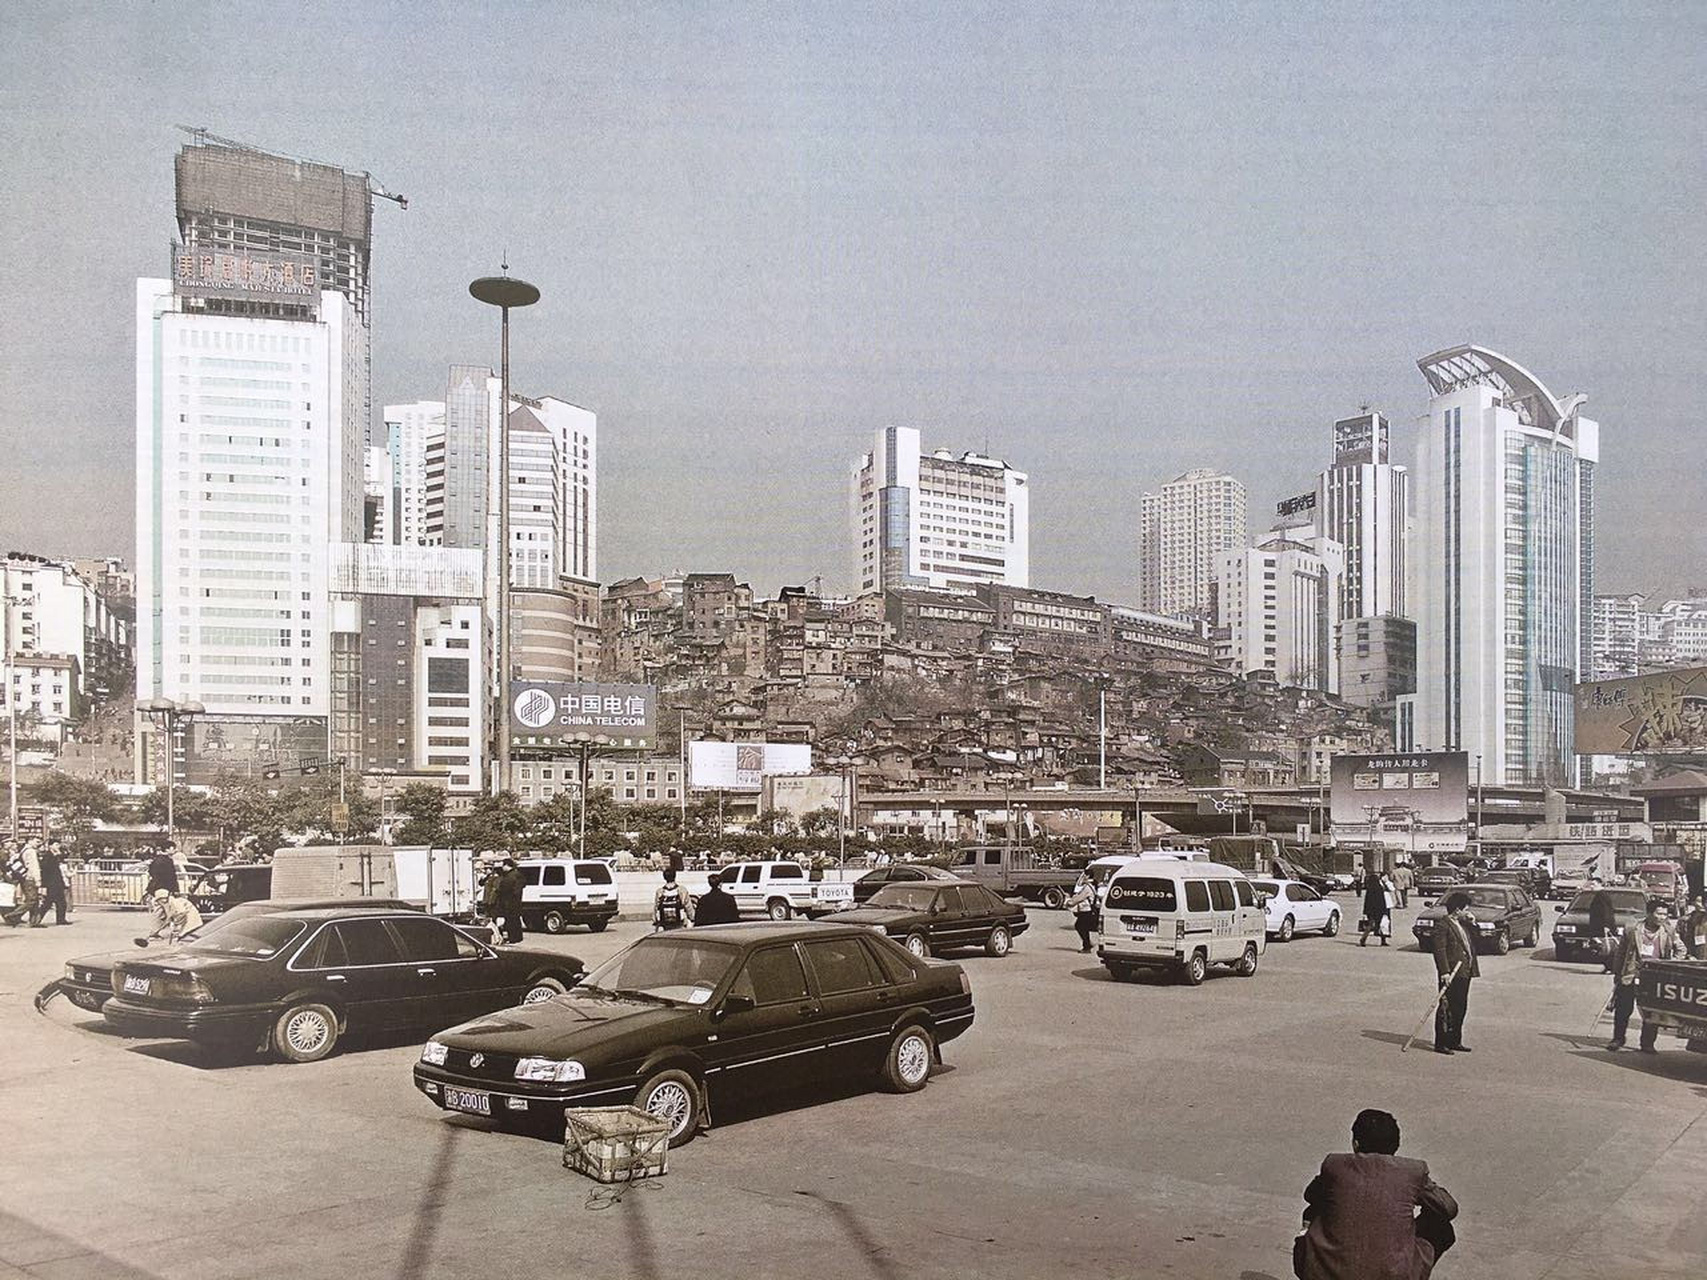 老照片,2003年的重庆生活,那时候的小汽车也是慢慢多了起来,马路上